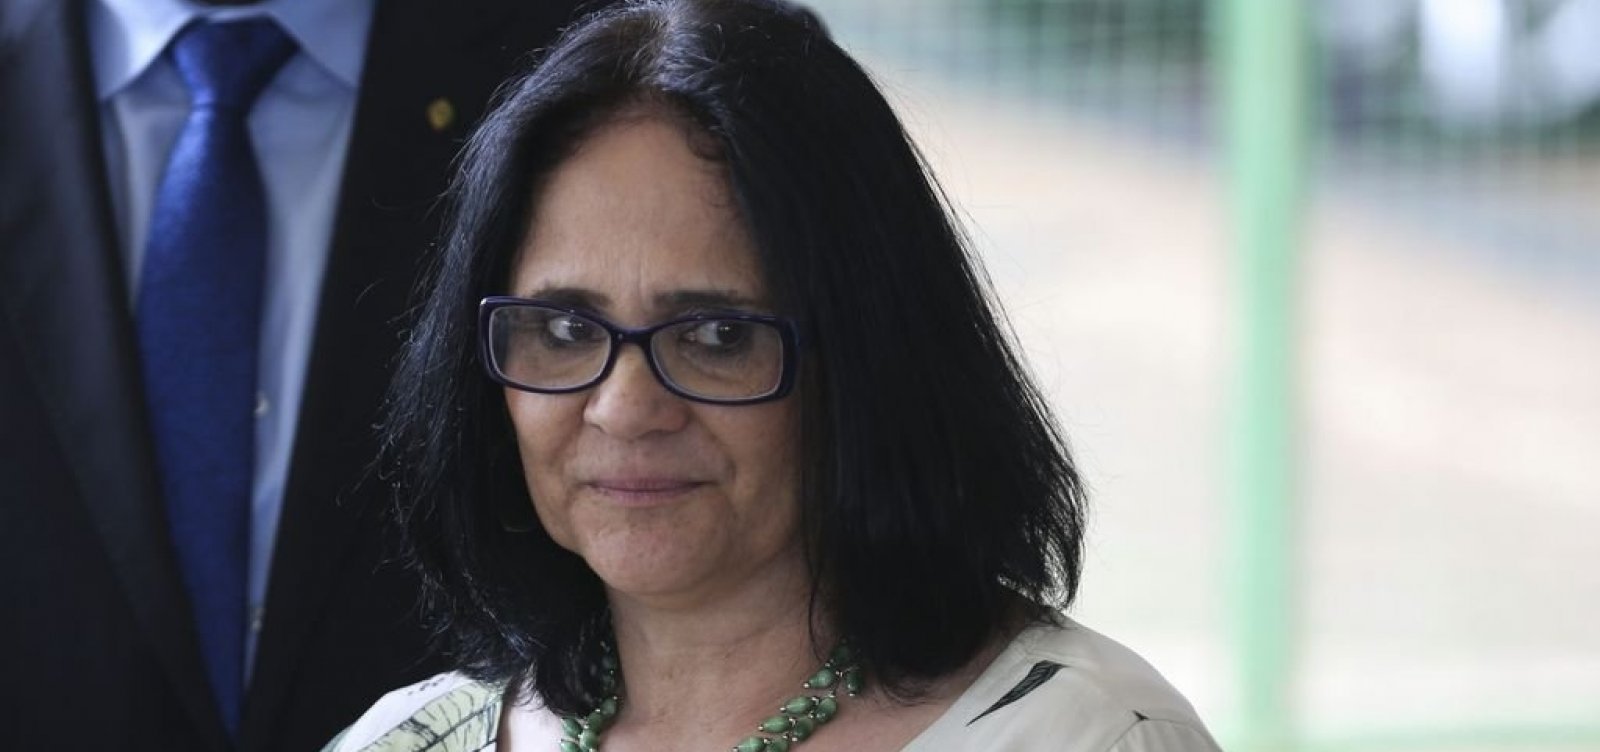 Futura ministra, Damares Alves expõe estupro sofrido na infância 